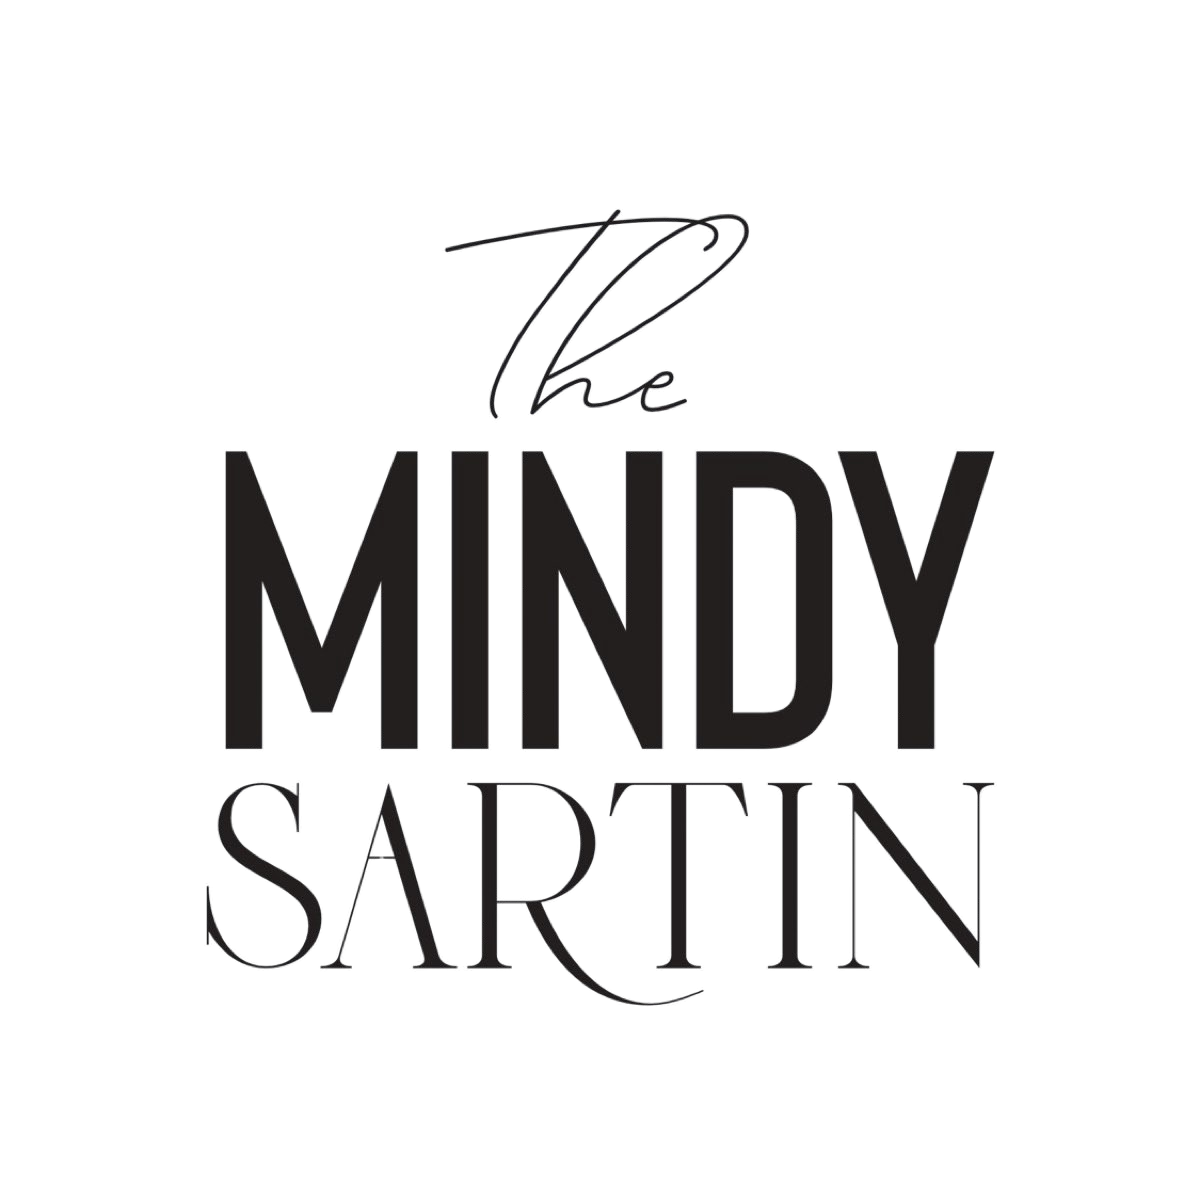 The Mindy Sartin logo